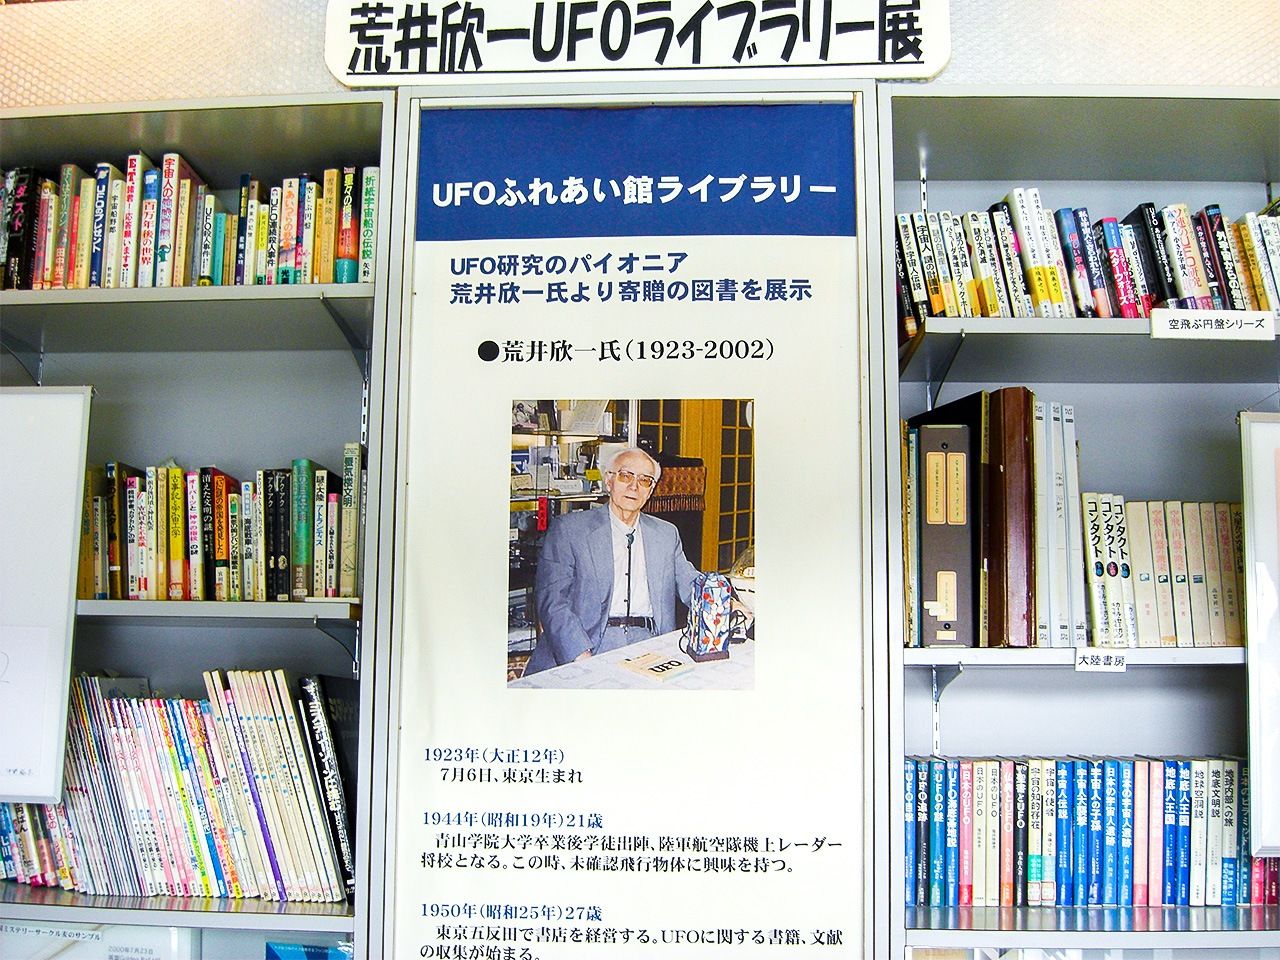 В музее «UFO фурэаикан» в преф. Фукусима хранятся и экспонируются около 3000 документов из собрания Араи Кинъити (предоставлено «UFO фурэаикан»)